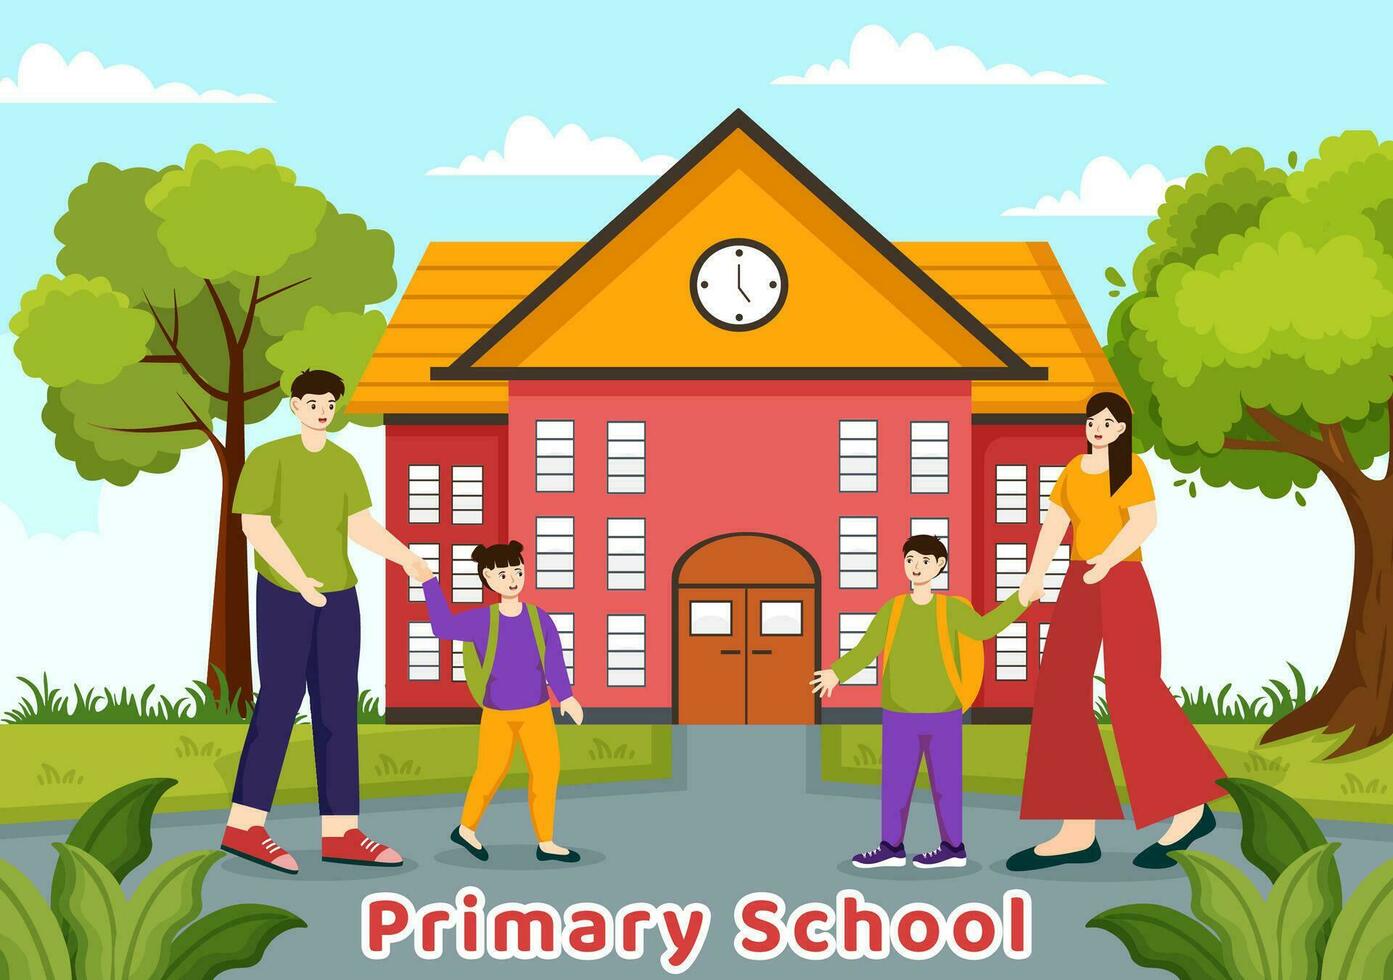 primario colegio vector ilustración de estudiantes niños y colegio edificio con el concepto de aprendizaje y conocimiento en plano dibujos animados antecedentes